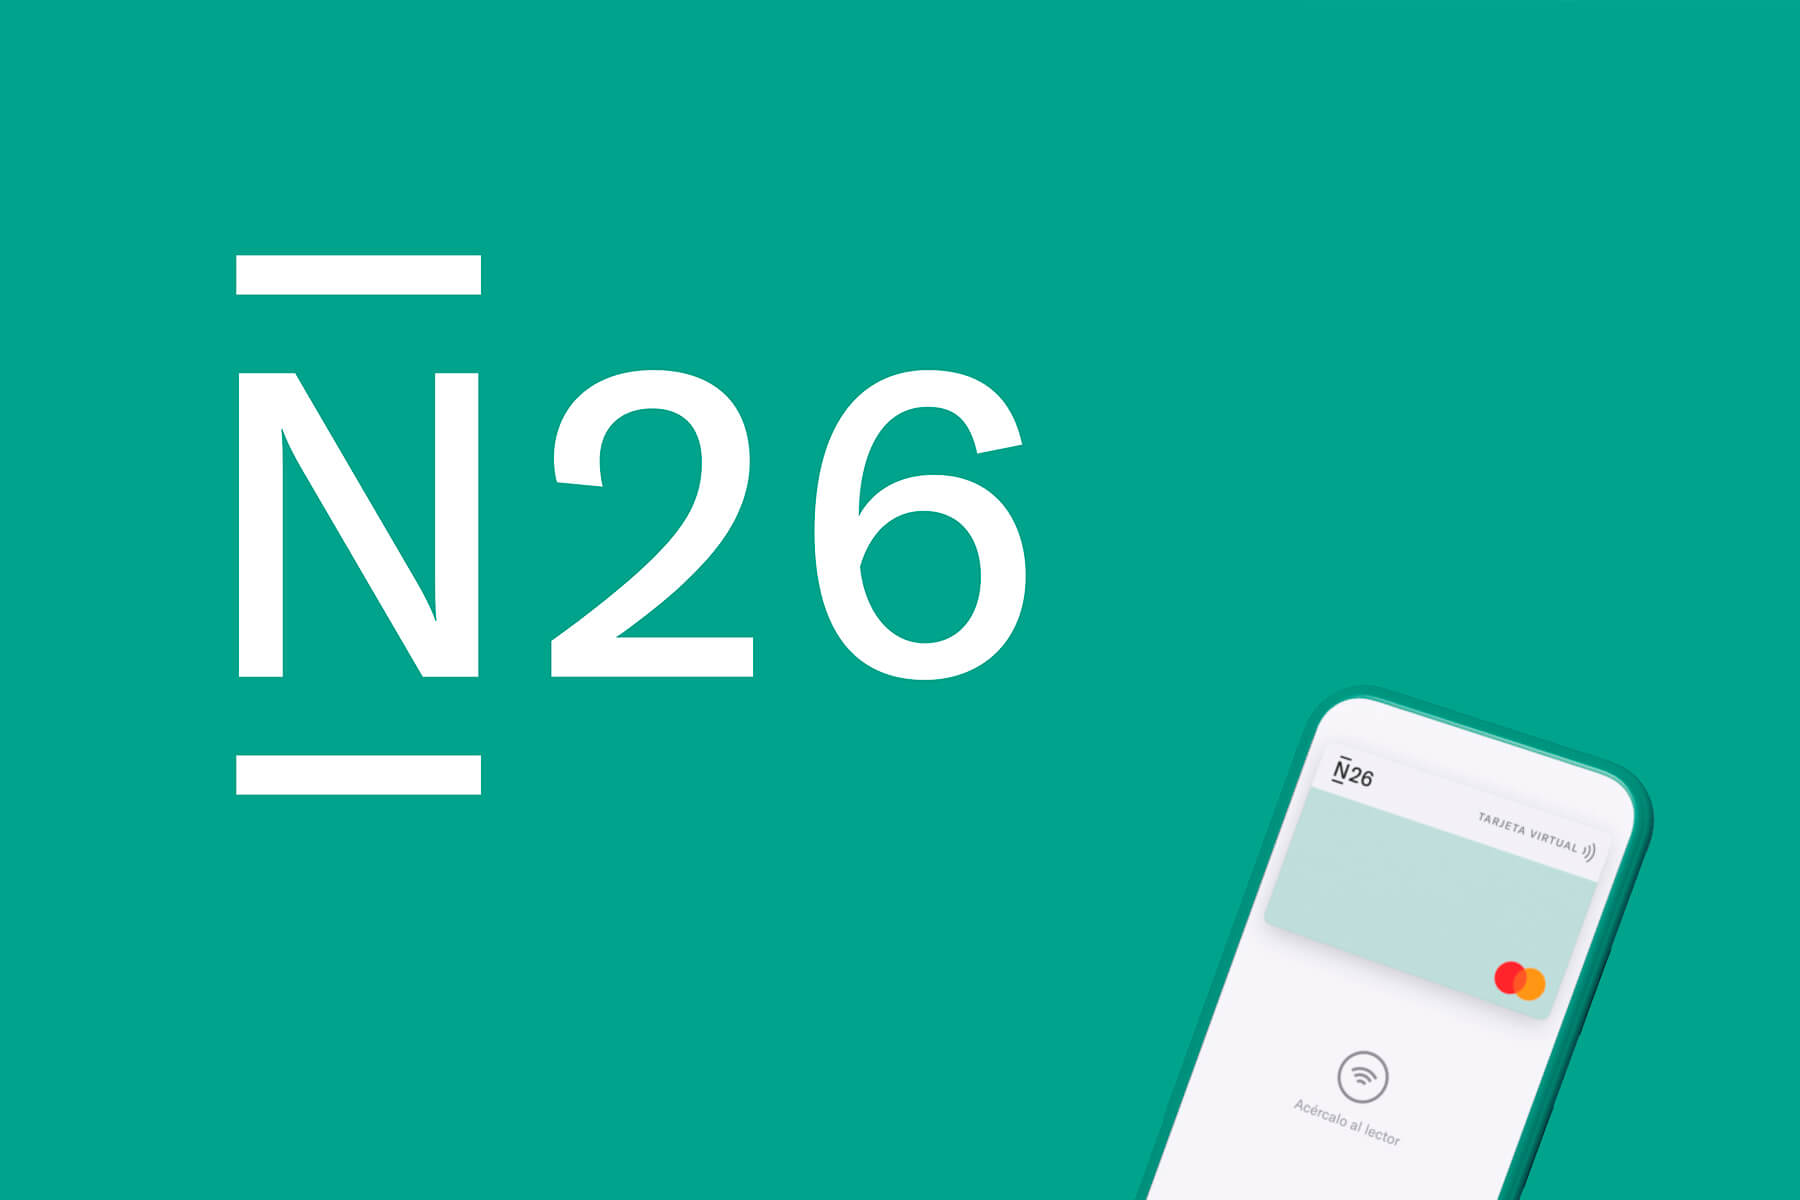 logo de la targeta n26 i el seu color caracterític i un exemple de la targeta virtual que es pot obtenir fàcilment i així tenir la N26 per viatjar gratuitament